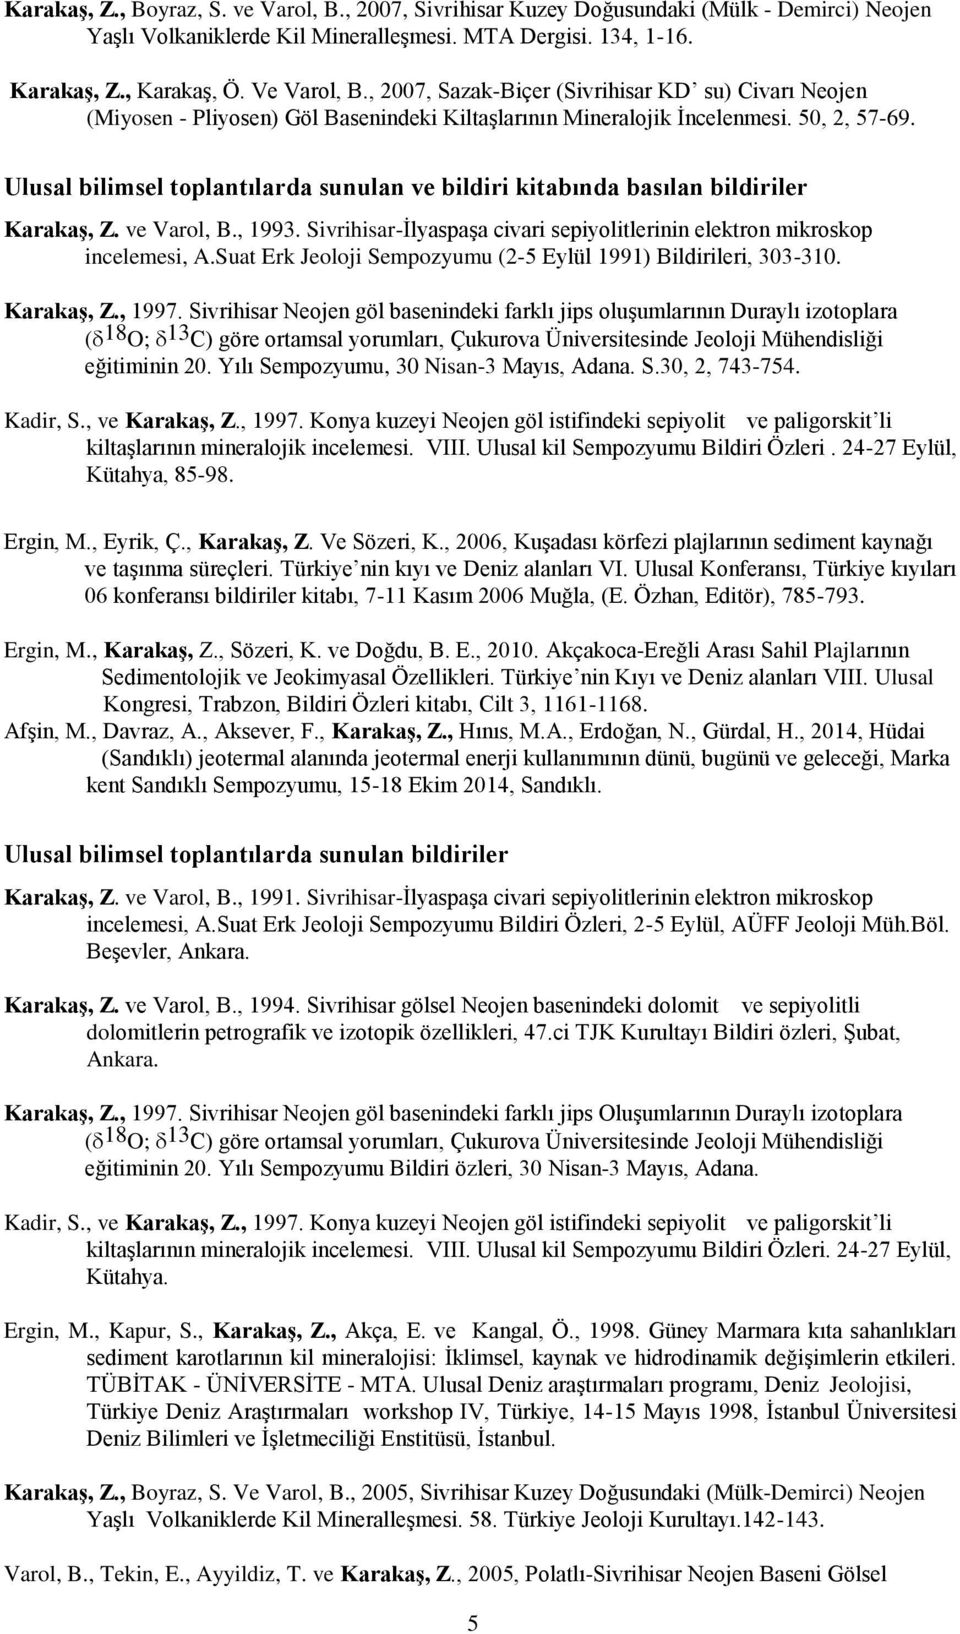 Ulusal bilimsel toplantılarda sunulan ve bildiri kitabında basılan bildiriler Karakaş, Z. ve Varol, B., 1993. Sivrihisar-İlyaspaşa civari sepiyolitlerinin elektron mikroskop incelemesi, A.